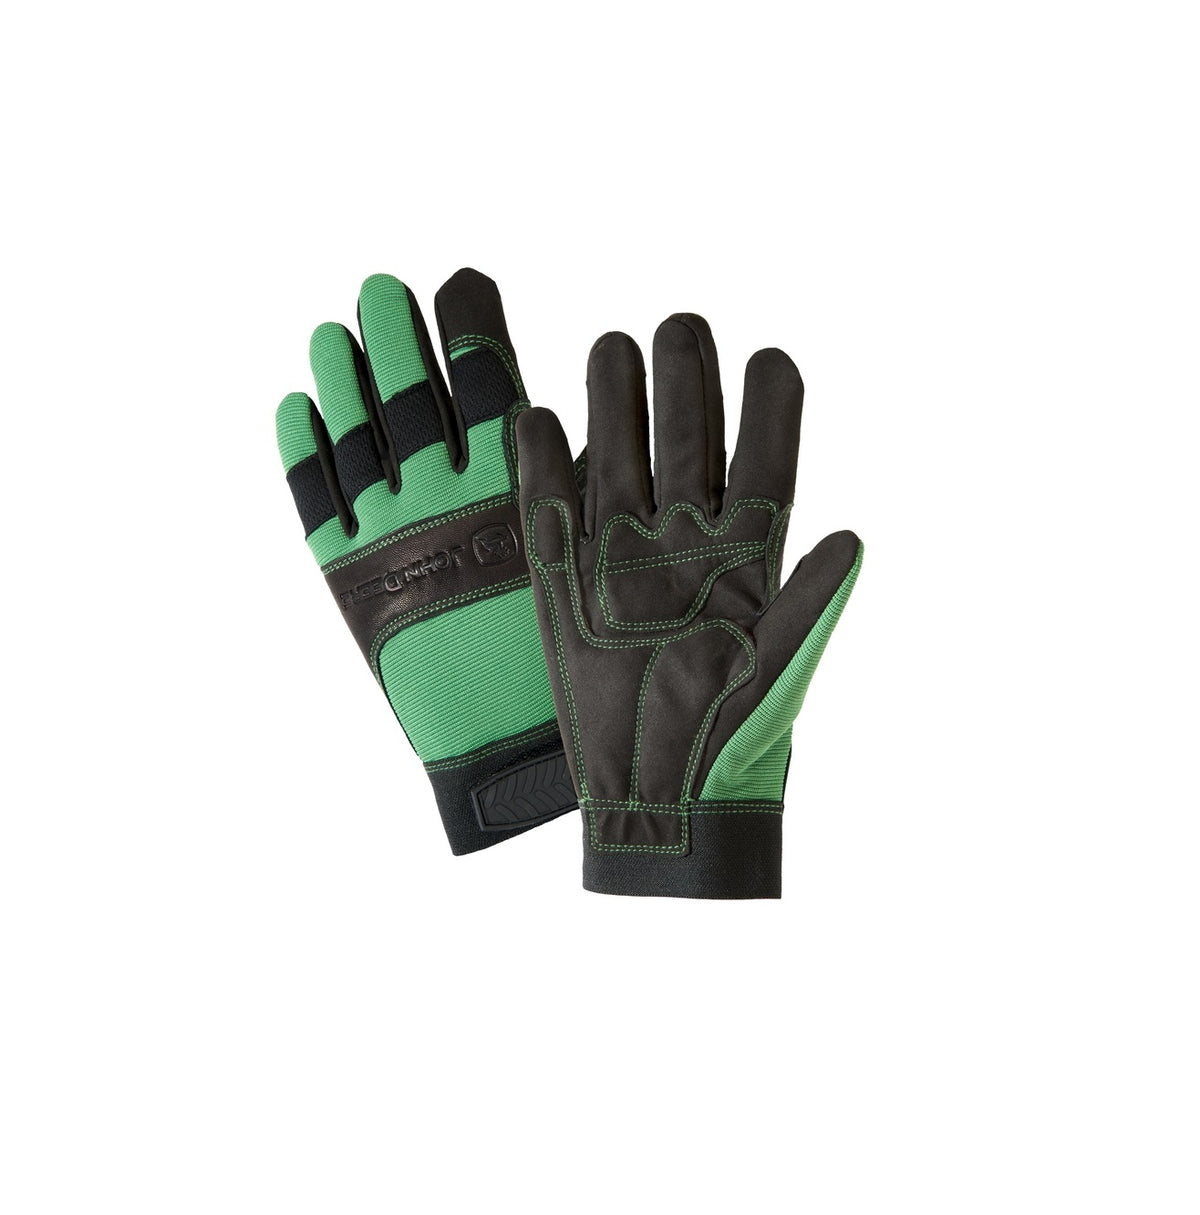 West Chester JD00010G-XL John Deere Hi-Dexterity Work Gloves